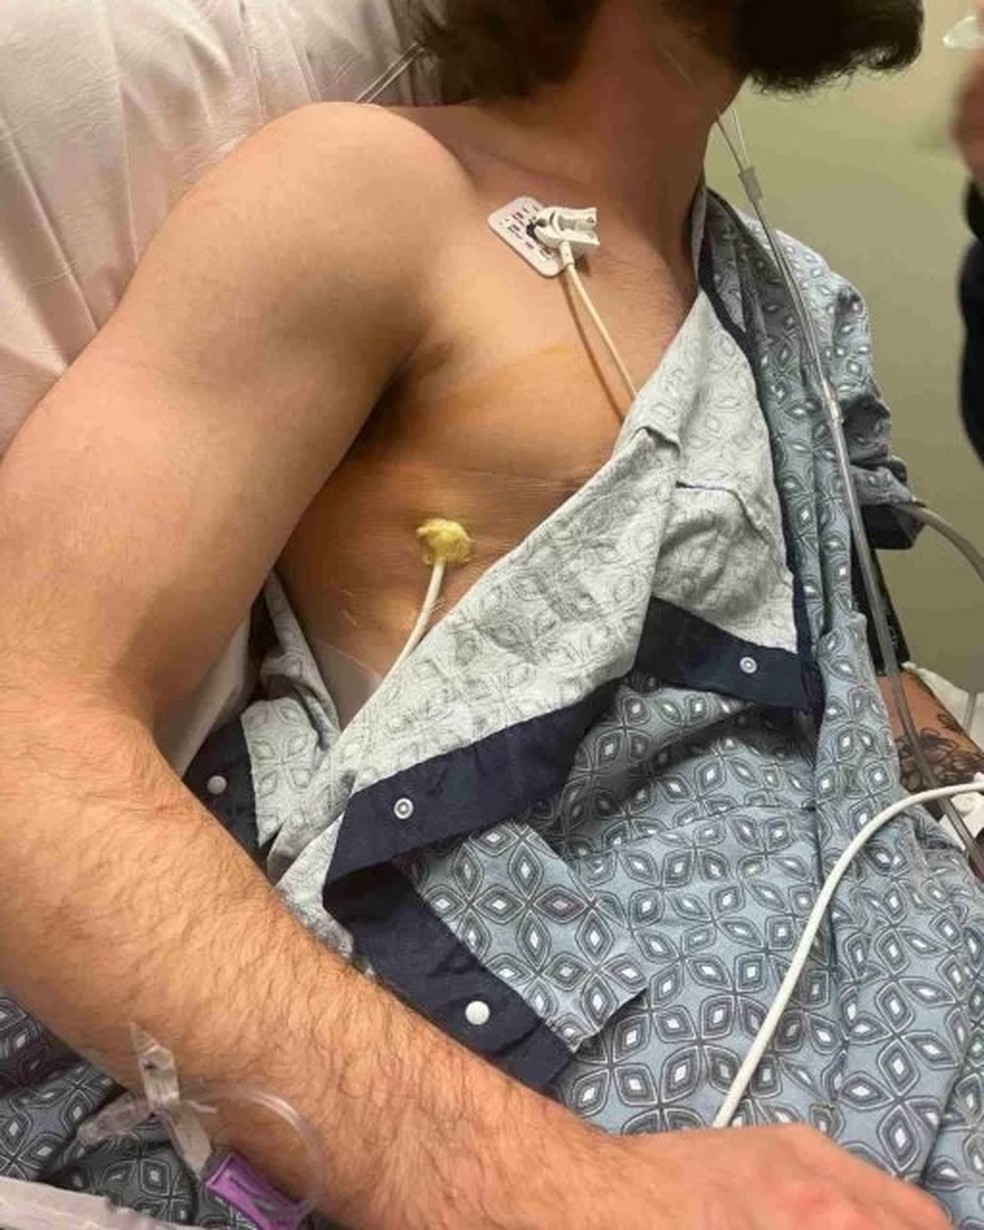 Jovem de 20 anos ainda se recupera de cirurgia de retirada de parte do pulmão — Foto: Reprodução/Facebook